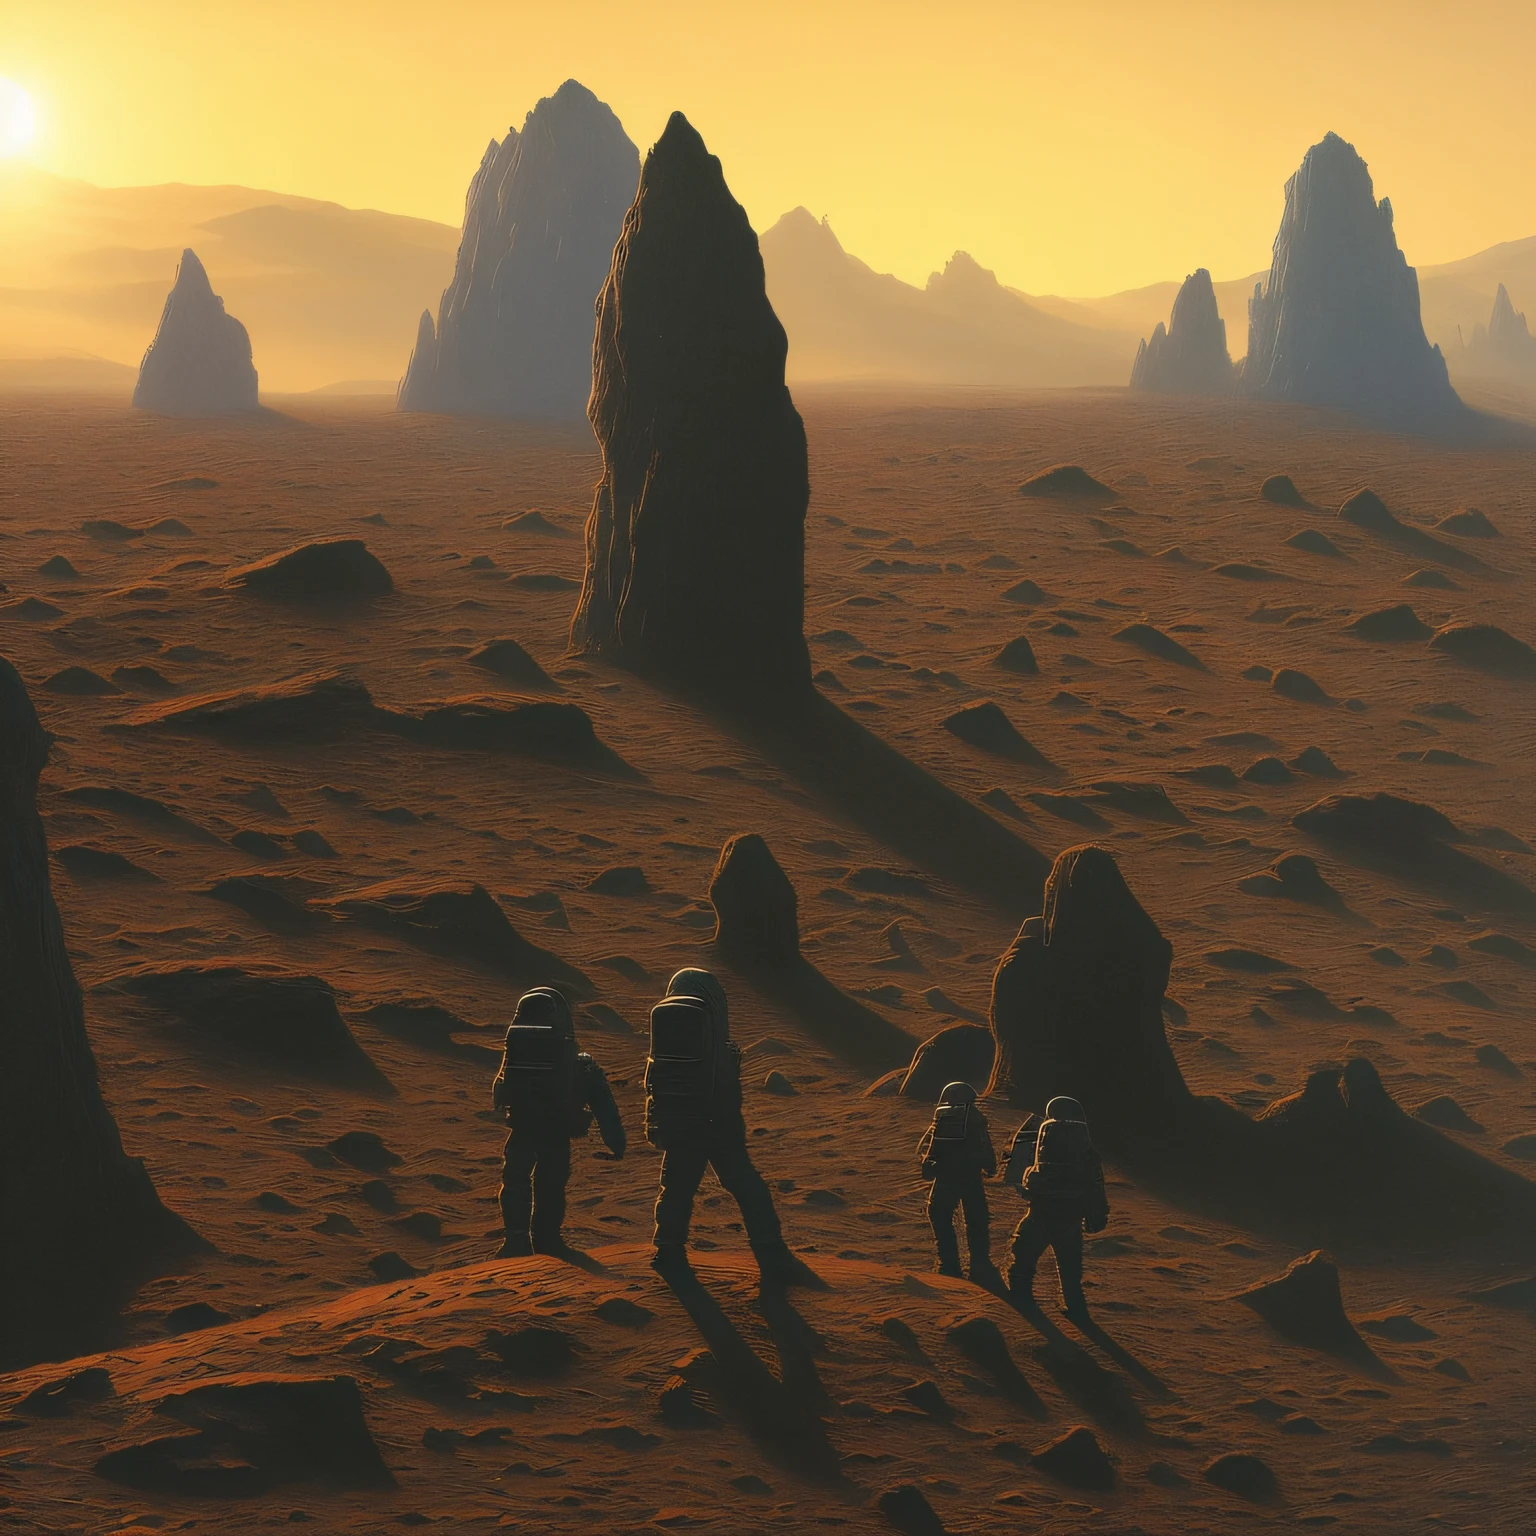 (繪畫:1.3) 的,(孤獨:1) 人類太空人在火星上發現外星建築, 太陽眩光,(藝術家 Zdzislaw Beksinski 創作:1),(蒸汽波藝術:1)